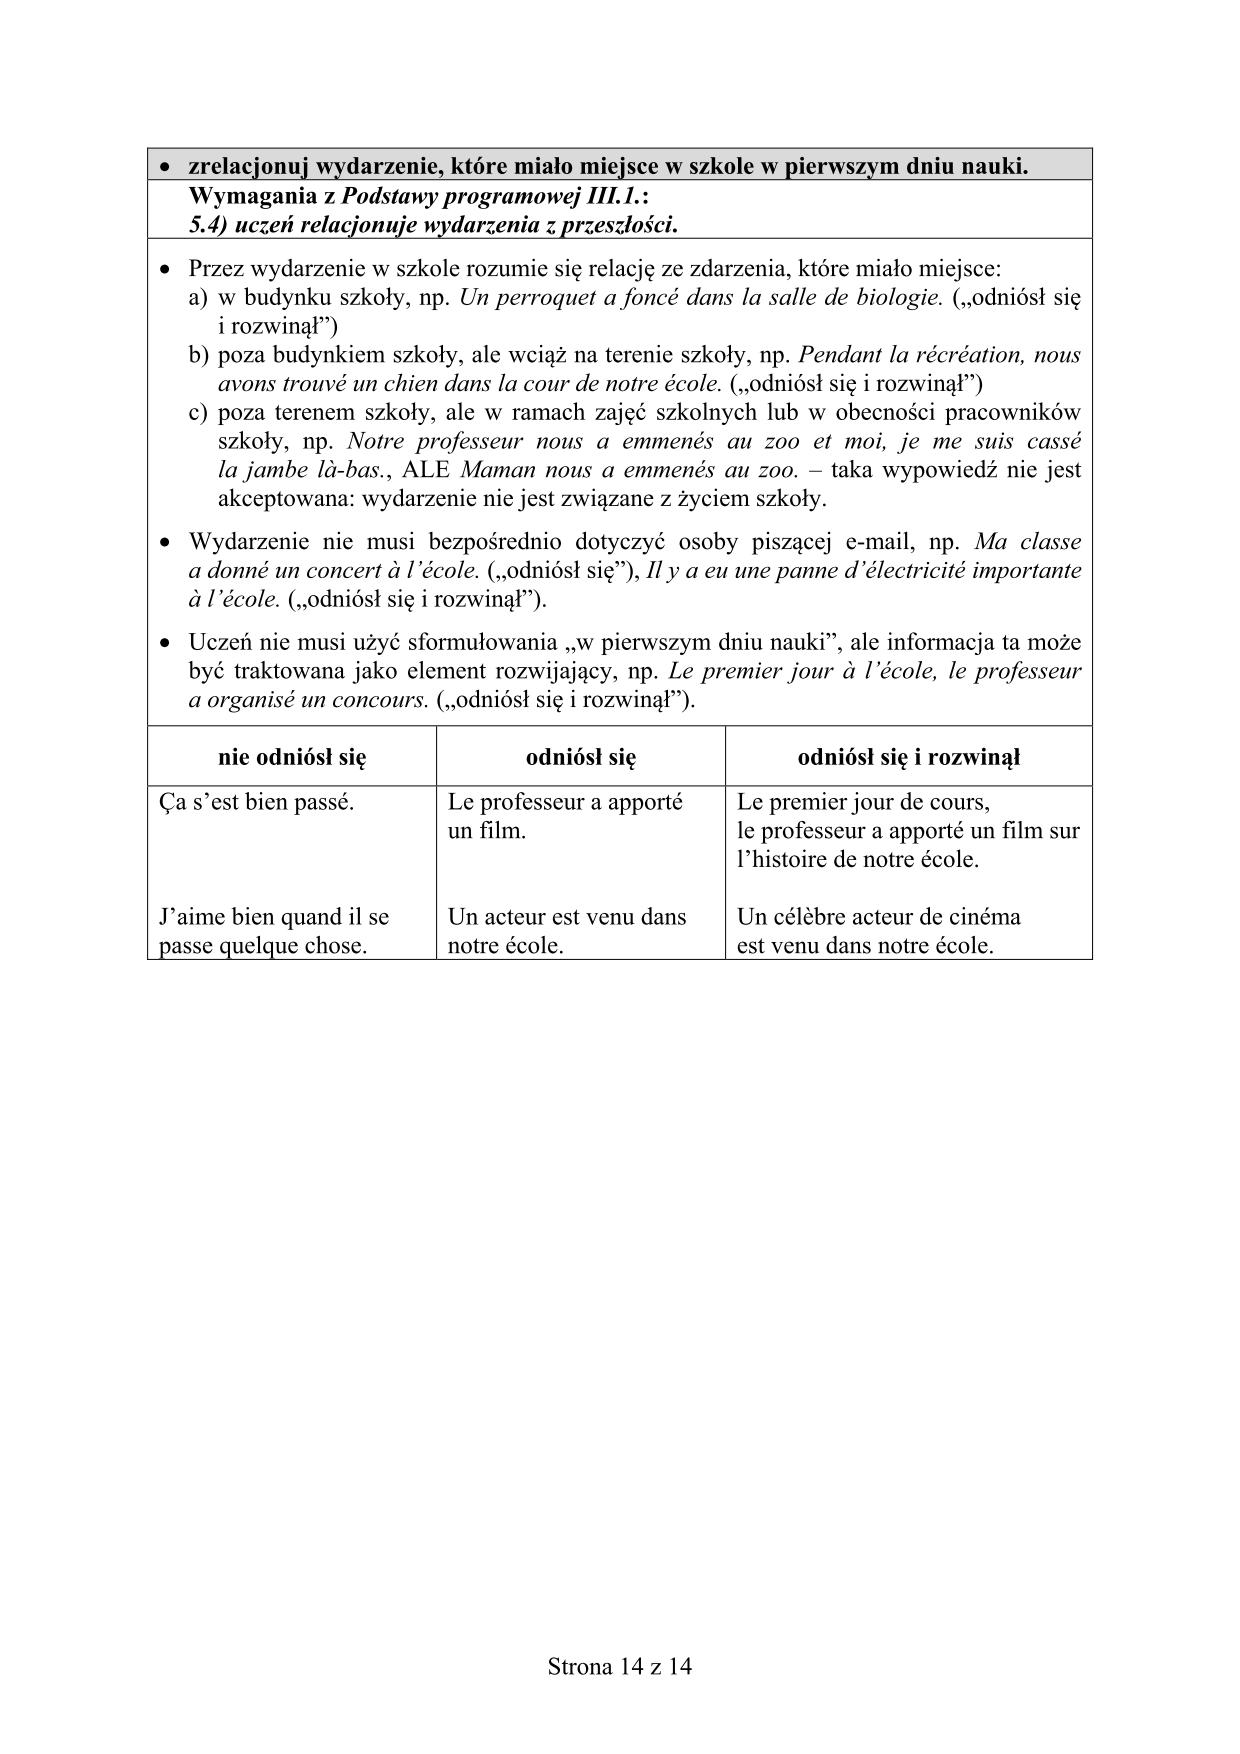 odpowiedzi-francuski-poziom-rozszerzony-egzamin-gimnazjalny-2016-14